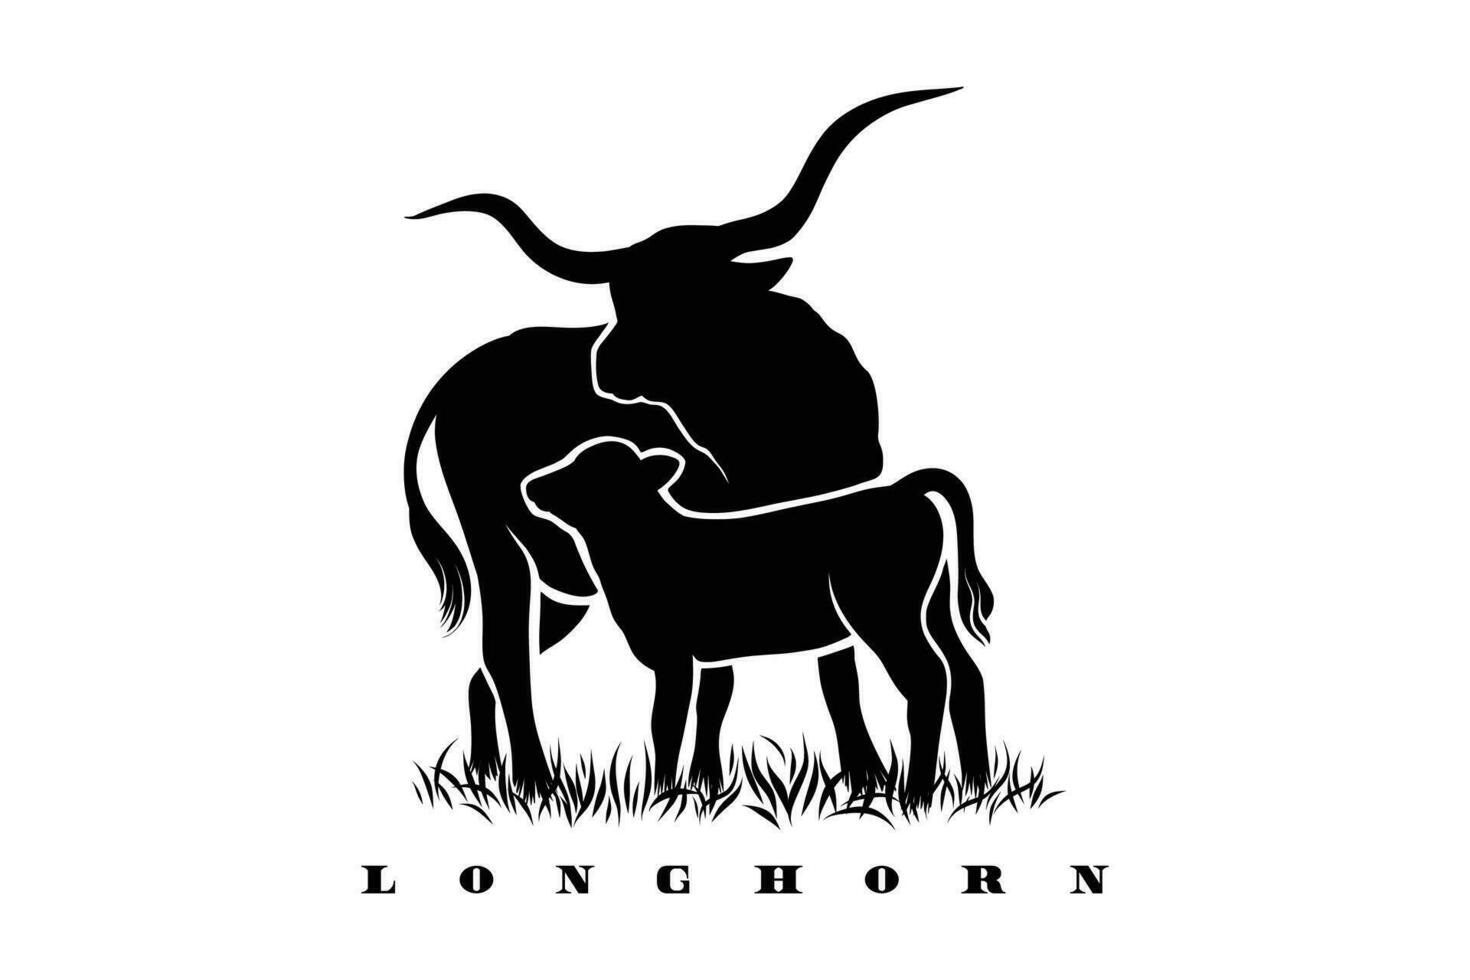 longhorn illustration dans silhouette style vecteur